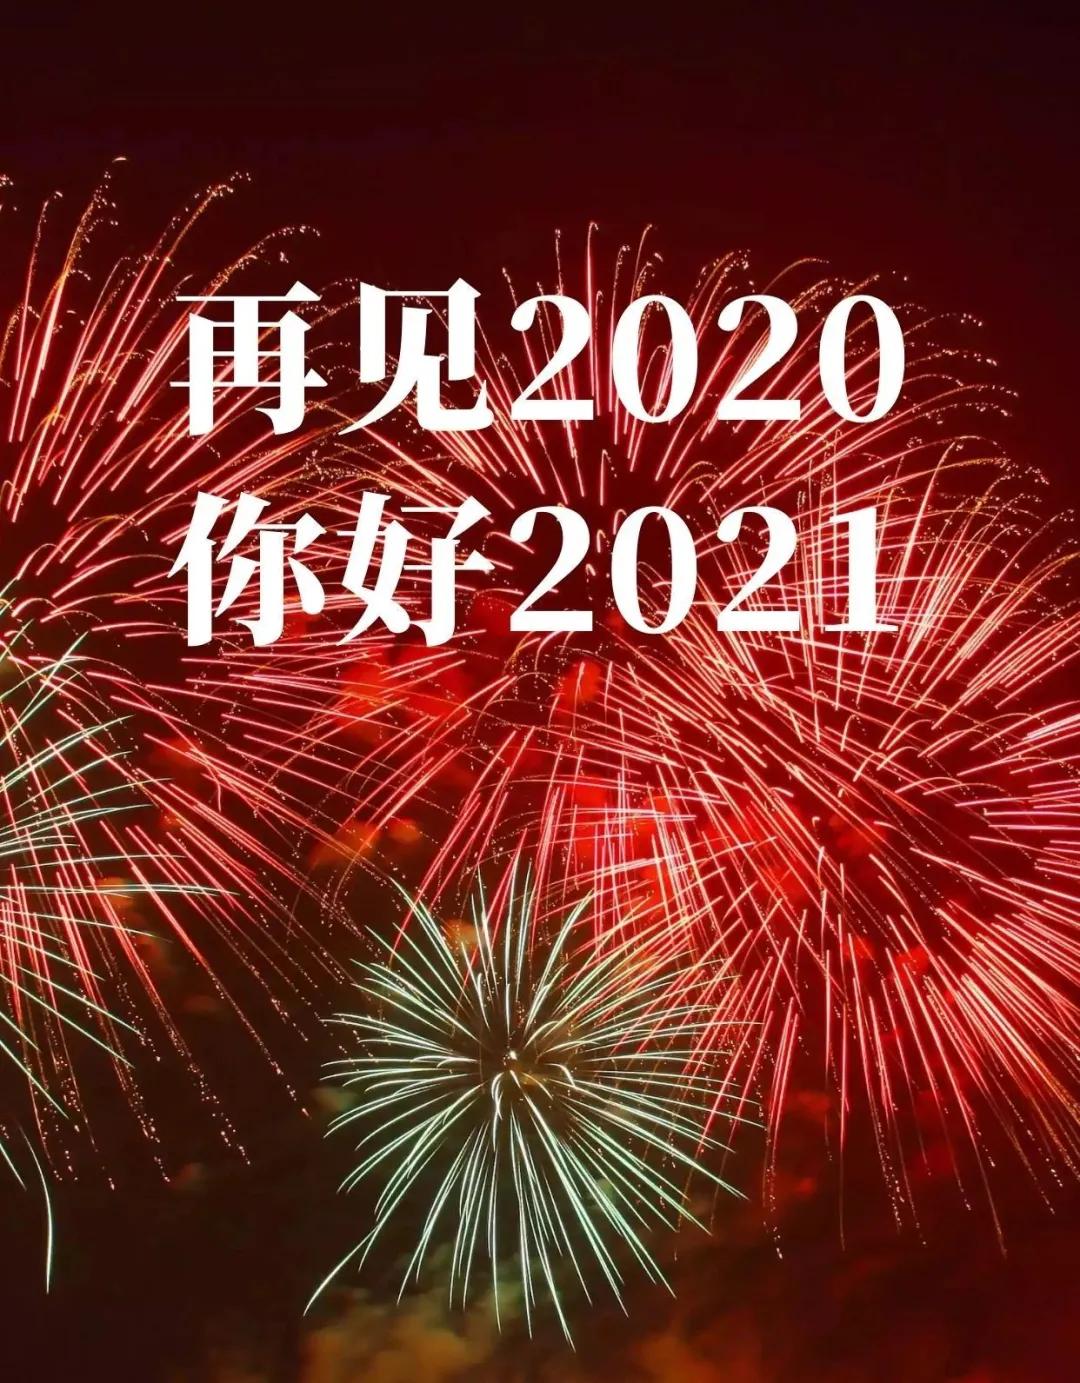 再见2020你好2021配图图片大全,告别2020朋友圈文案